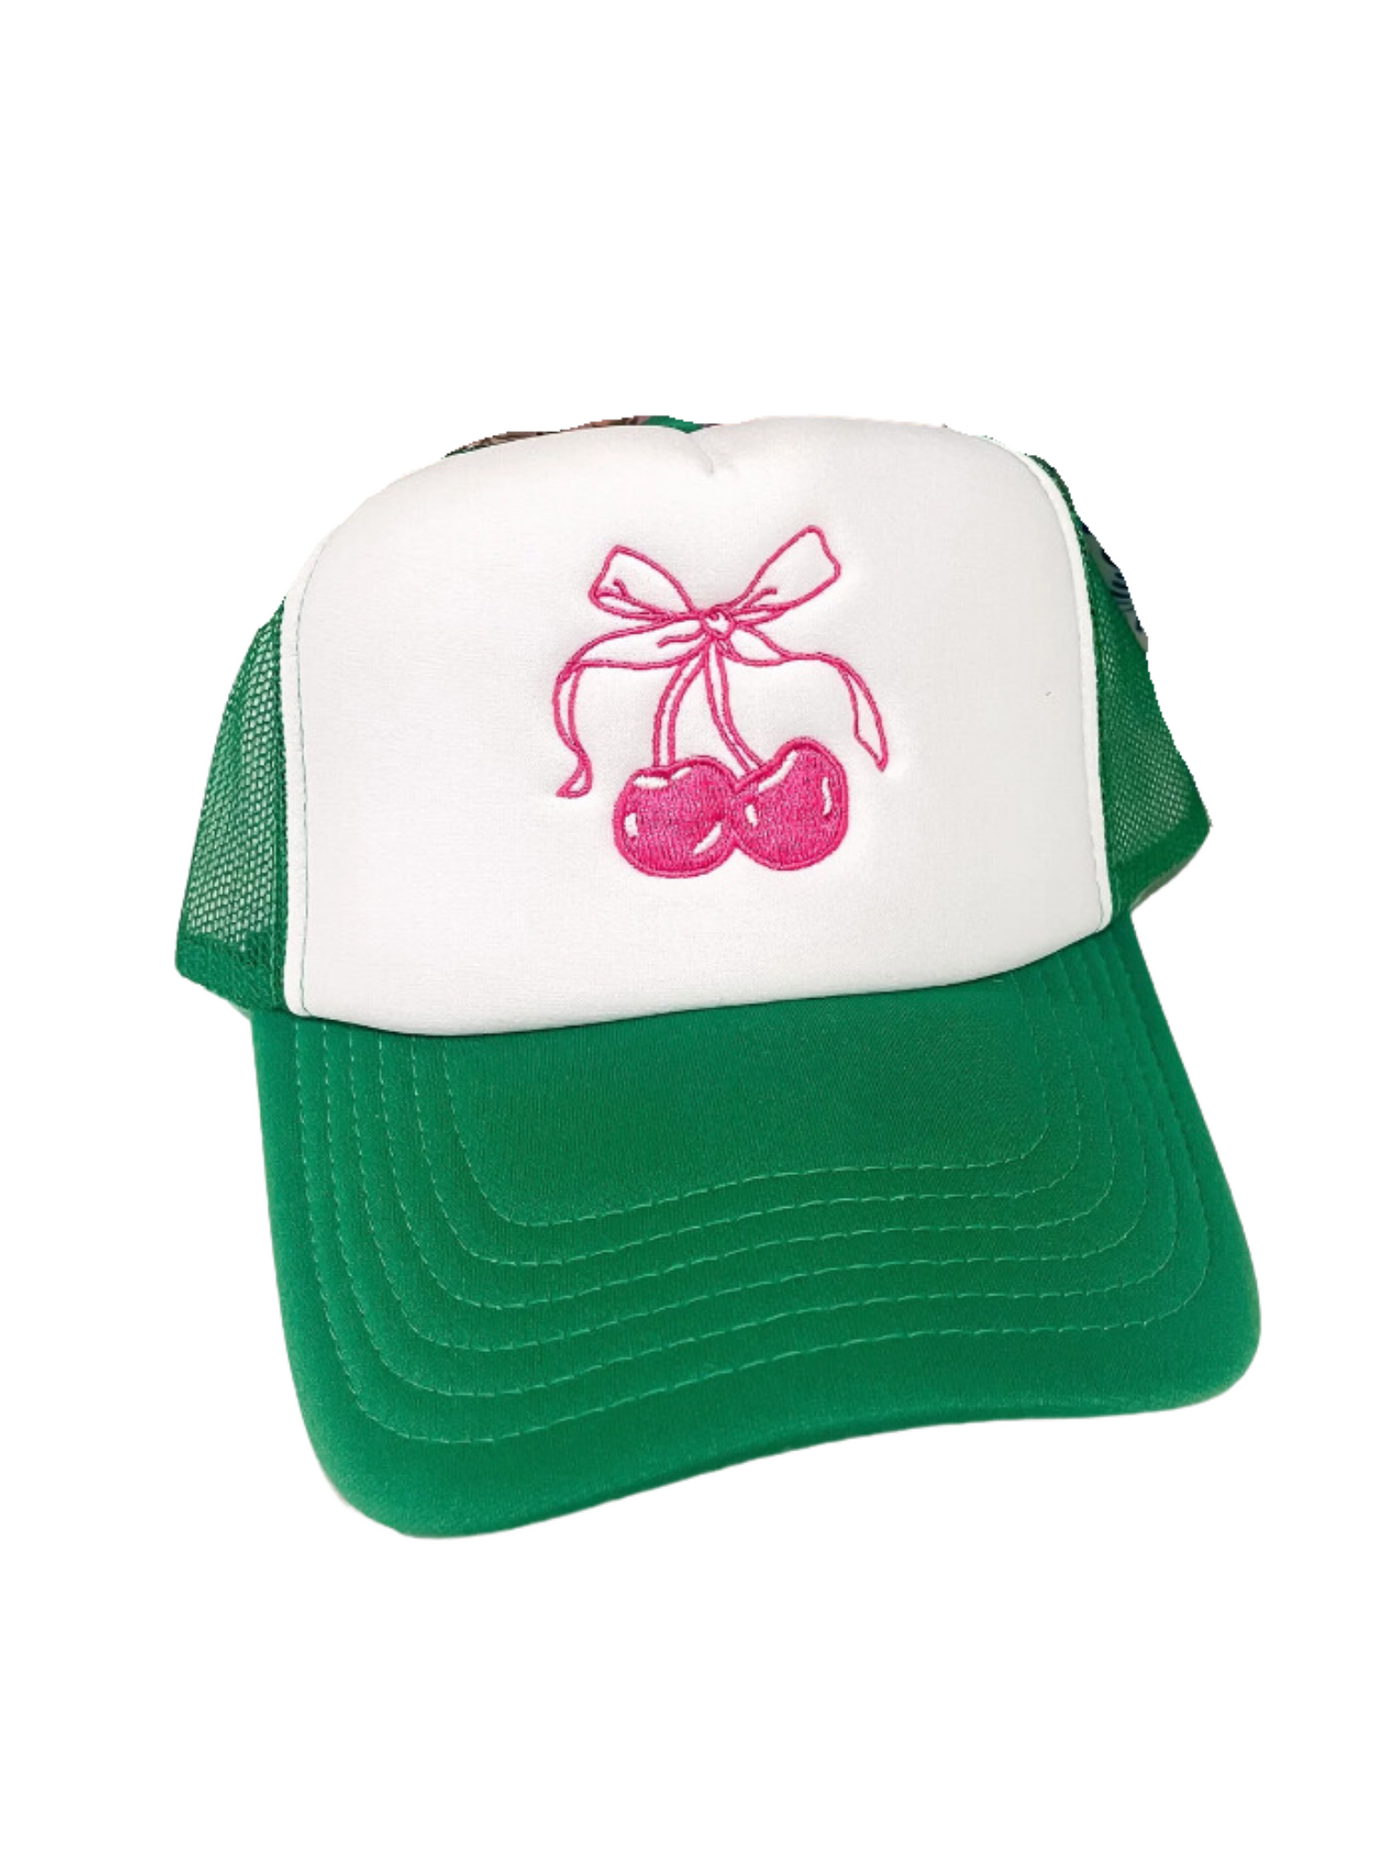 Cherry Bow Trucker Hat